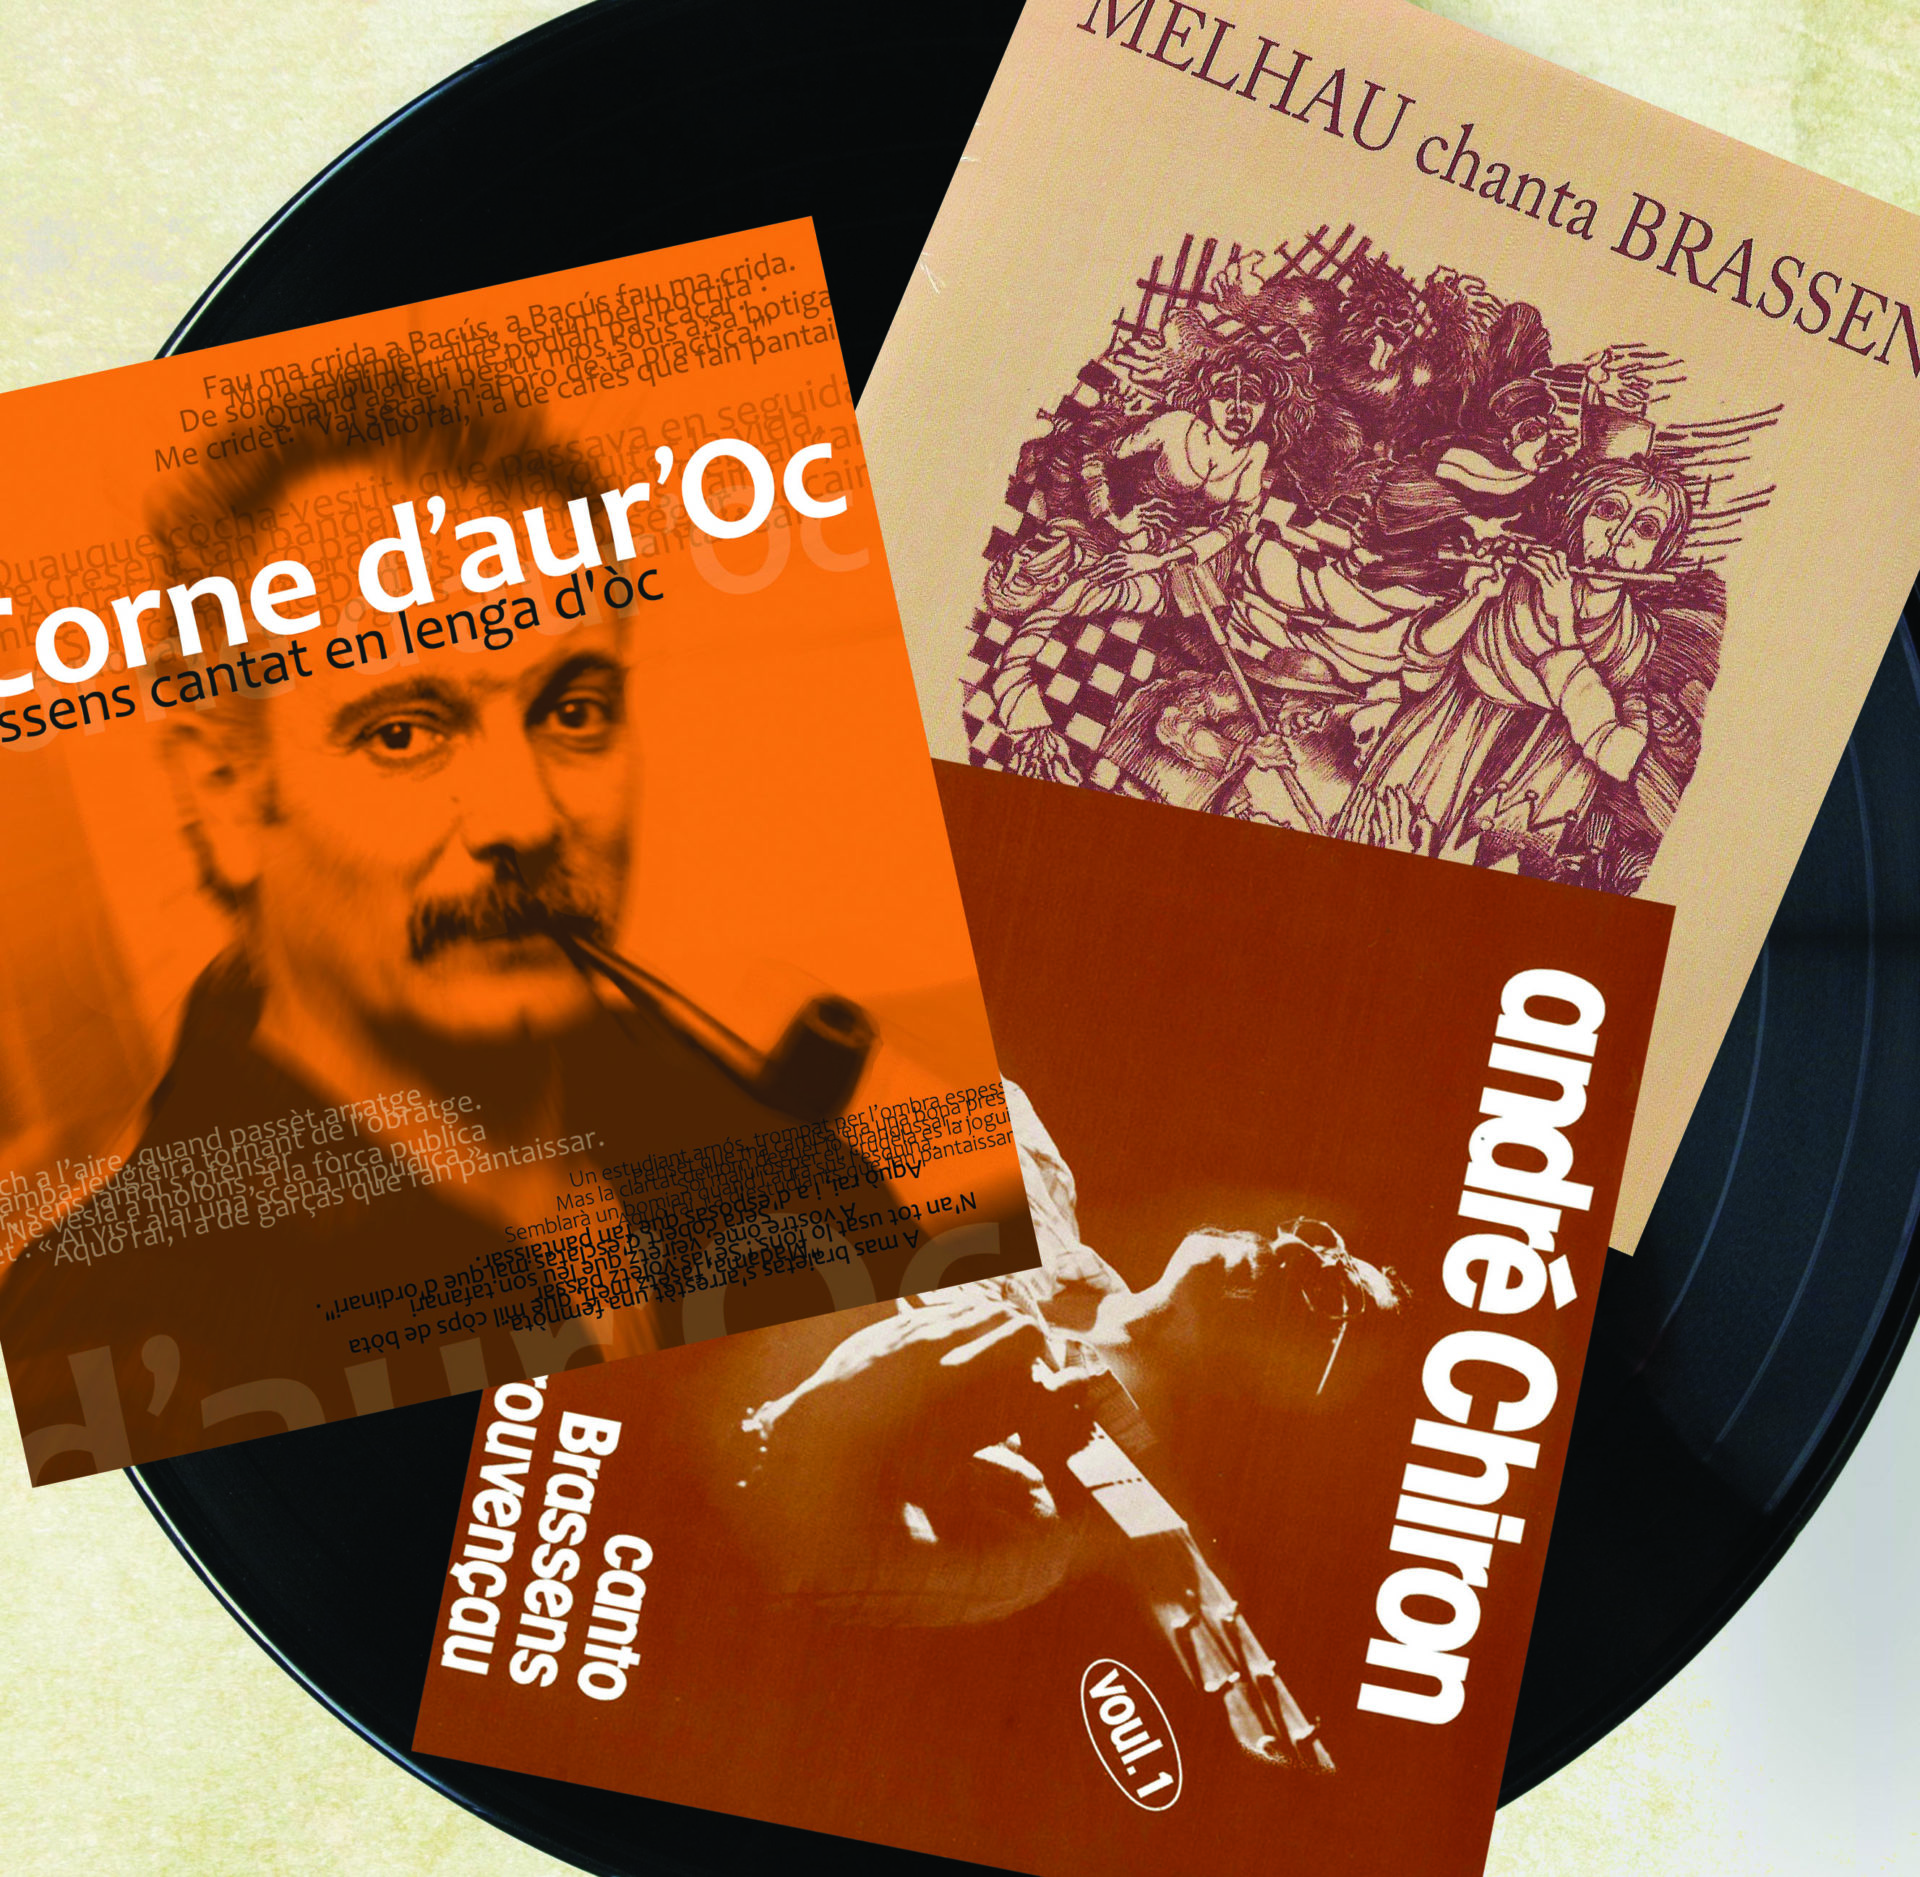 La seleccioneta del Diari : Brassens cantat en occitan